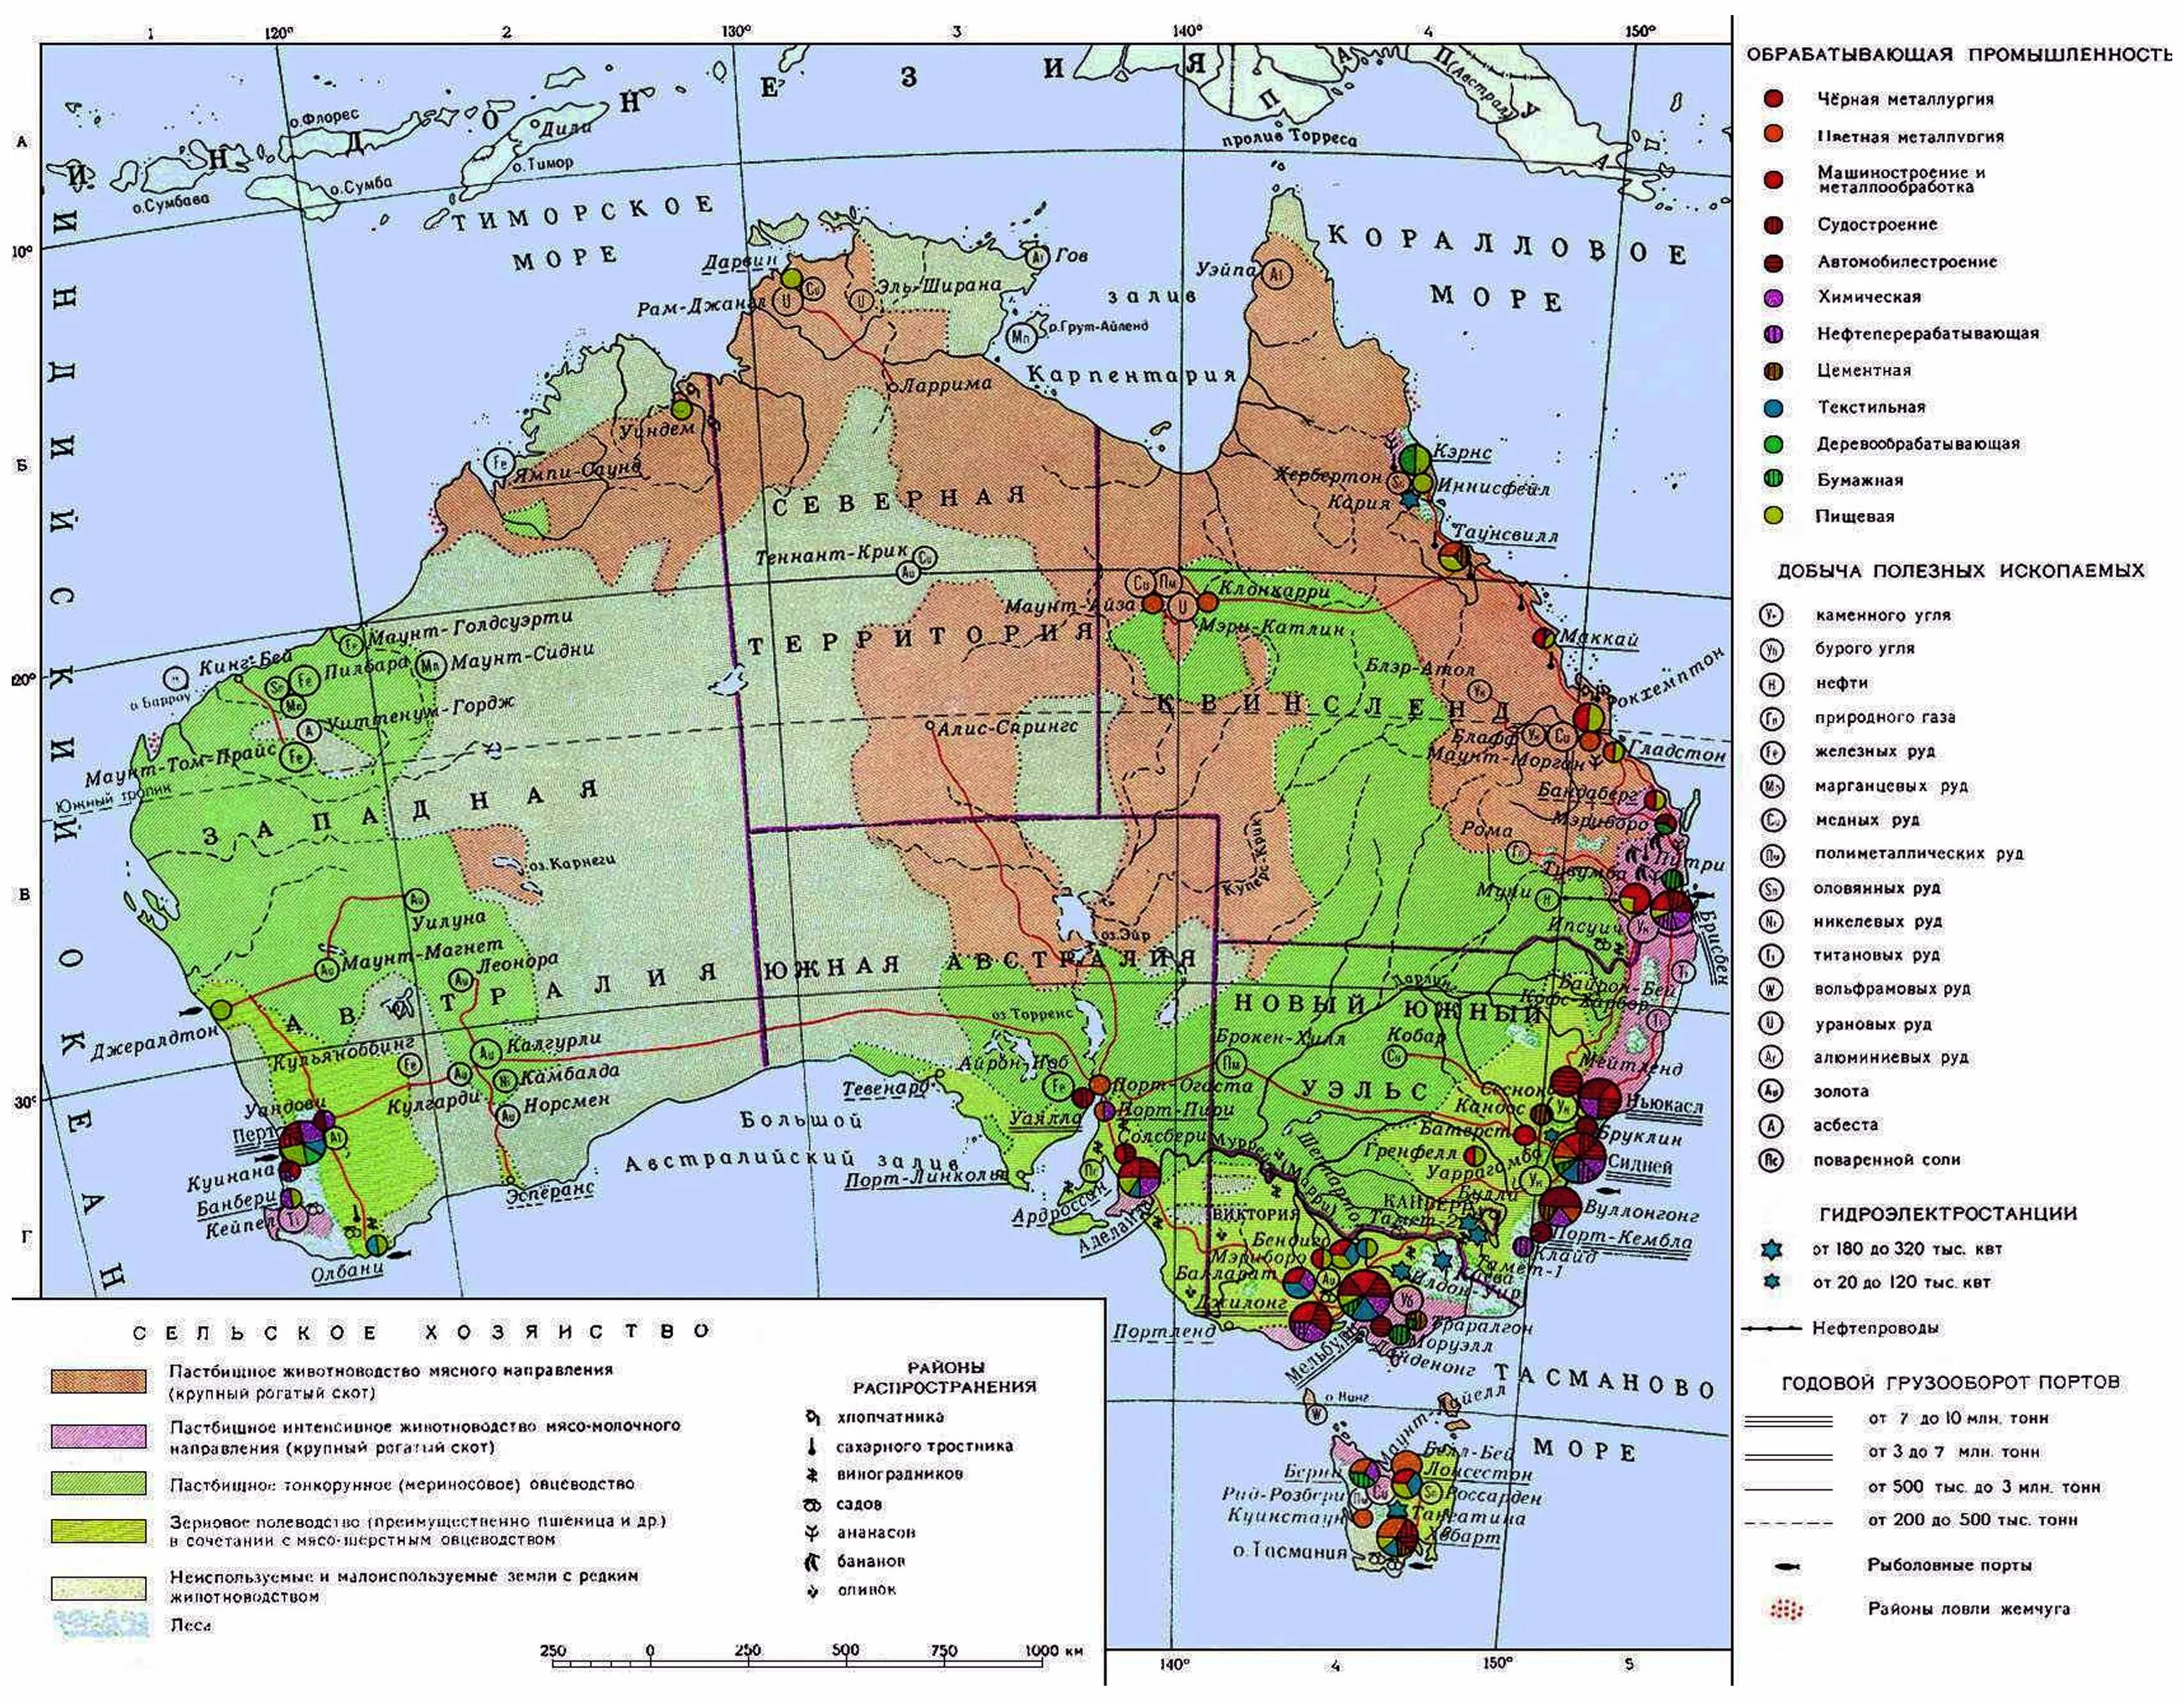 Экономическая карта Австралии. Крупные экономические центры Австралии контурная карта. Население и хозяйство Австралии карта. Австралийский Союз на карте Австралии. Подпишите крупнейшие города австралии